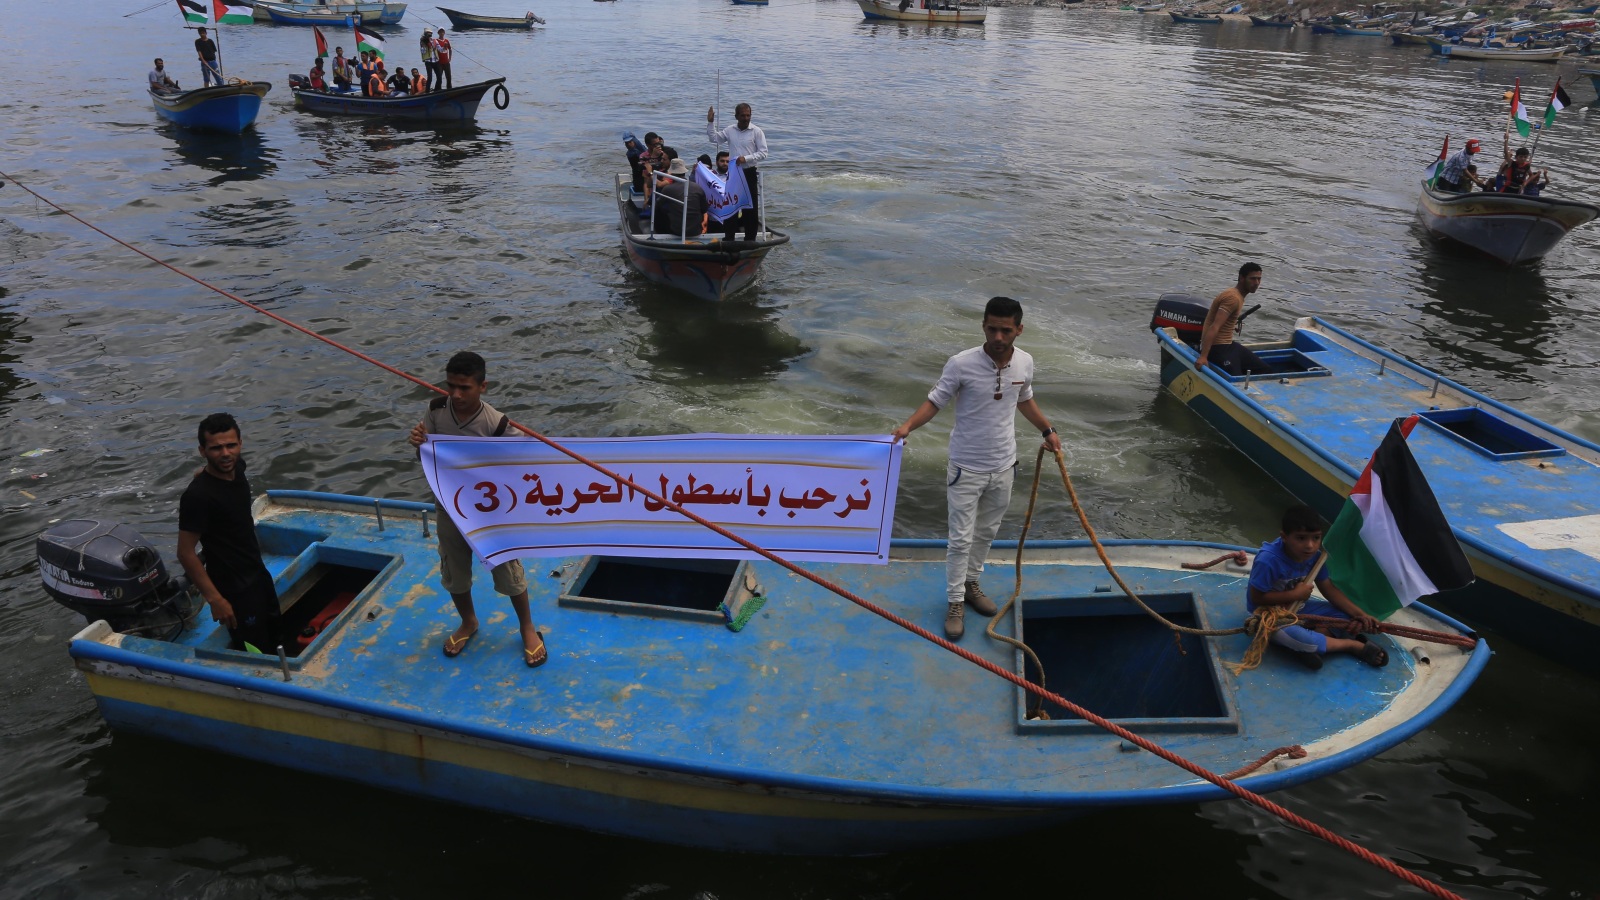 مراكب الصيادين نظمت مسيرة في بحر غزة للترحيب بأسطول الحرية (الجزيرة نت)